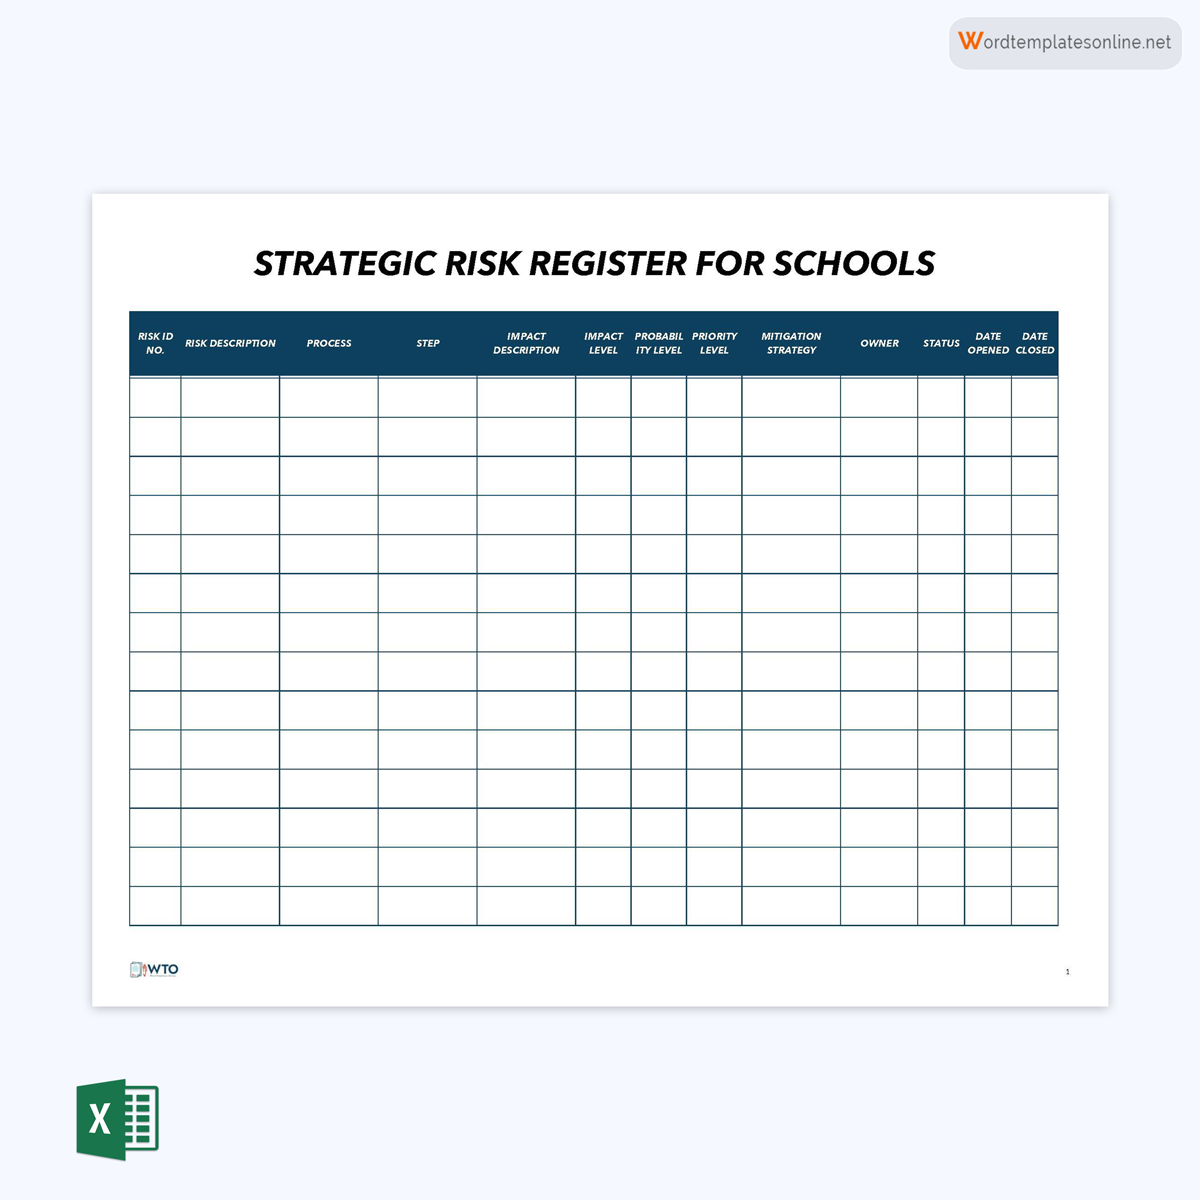 Strategic Risk Register for Schools